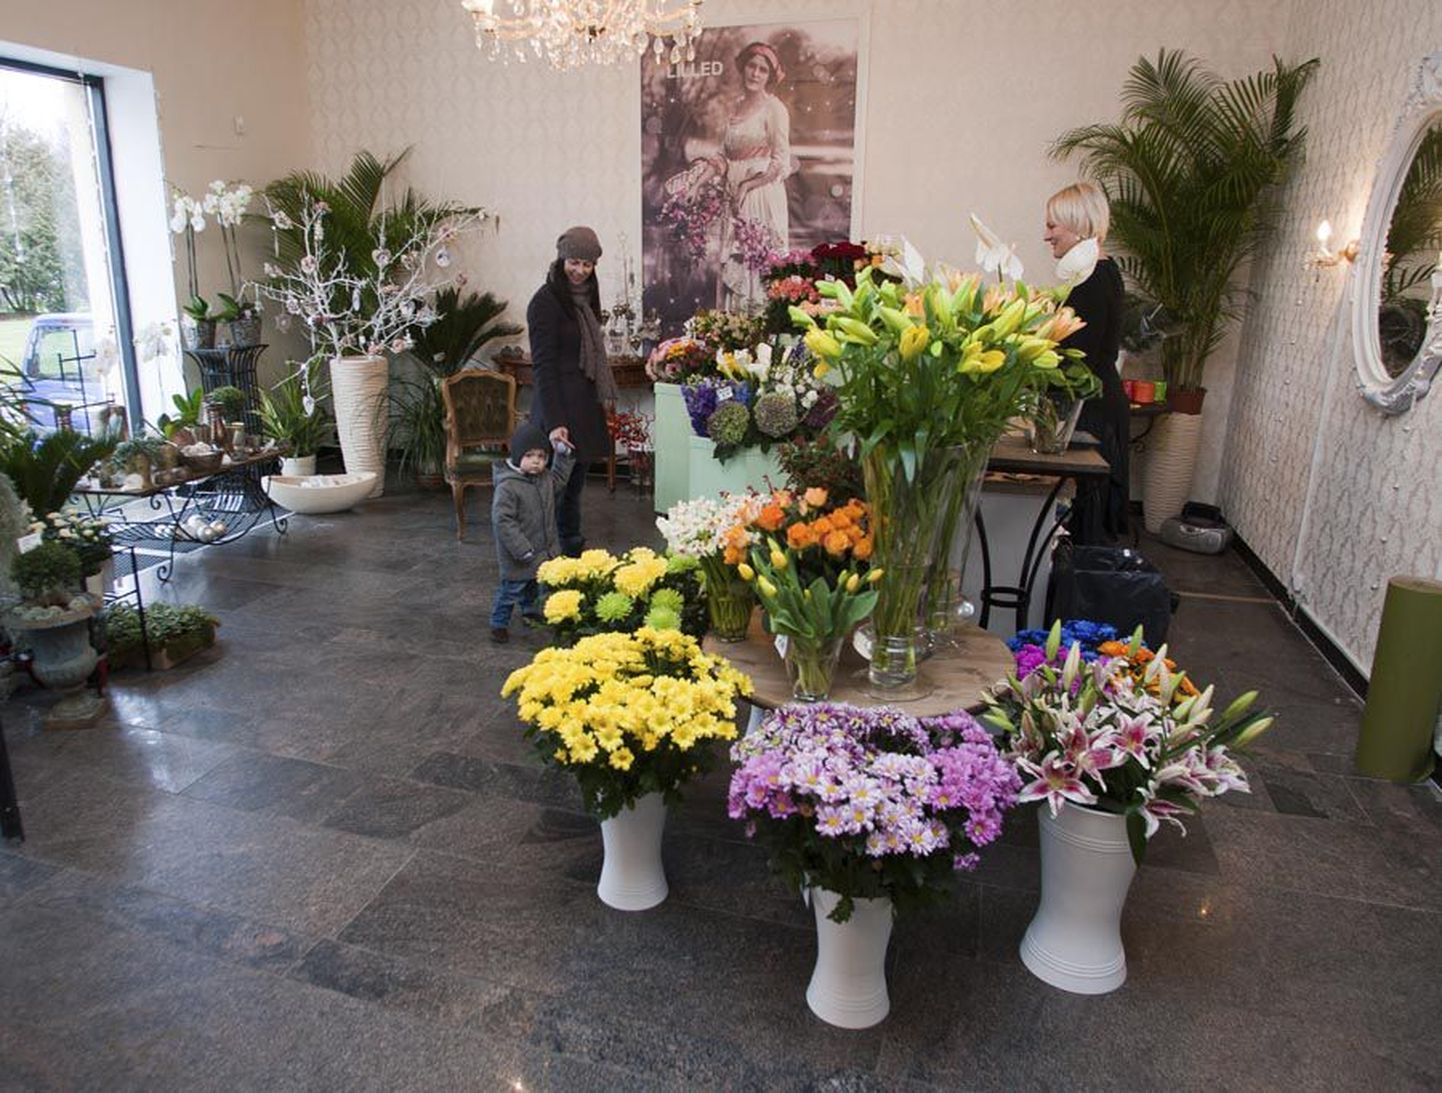 Kaks aastat tagasi Lossi tänaval luksusliku lillepoe avanud Jardin kolis aasta hiljem Maximasse, kuid sealgi ei olnud tal küllalt kliente.